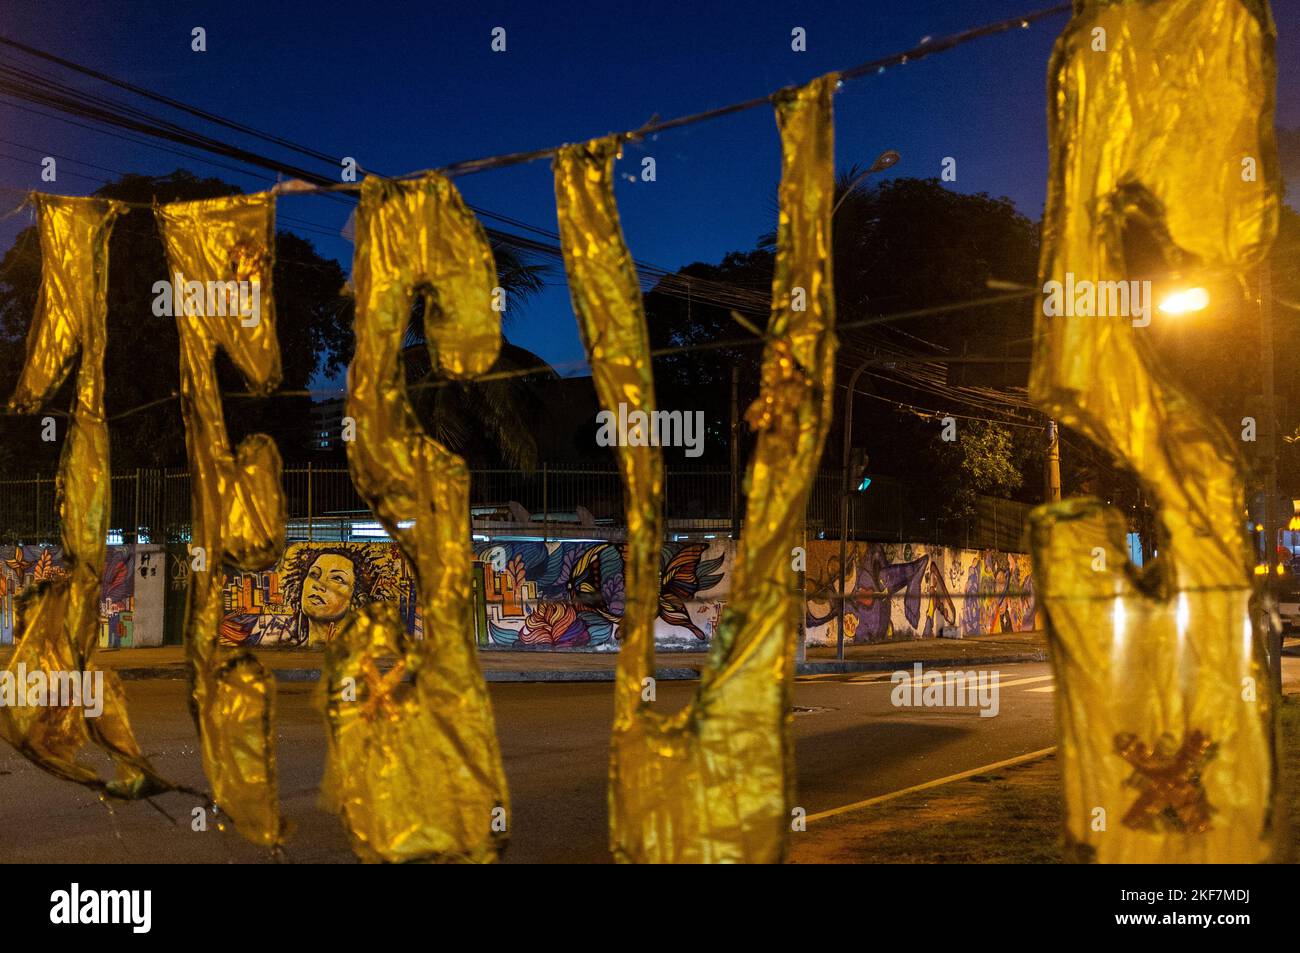 Wandgemälde als Hommage an Marielle Franco, in der Nähe des Ortes, an dem sie ermordet wurde. Marielle Franco war eine brasilianische Feministin, Politikerin und Menschenrechtsaktivistin, die am 14. März 2018 in Rio de Janeiro ermordet wurde - sie war eine ausgesprochene Kritikerin der Polizeibrutalität und außergerichtlichen Tötungen. Stockfoto